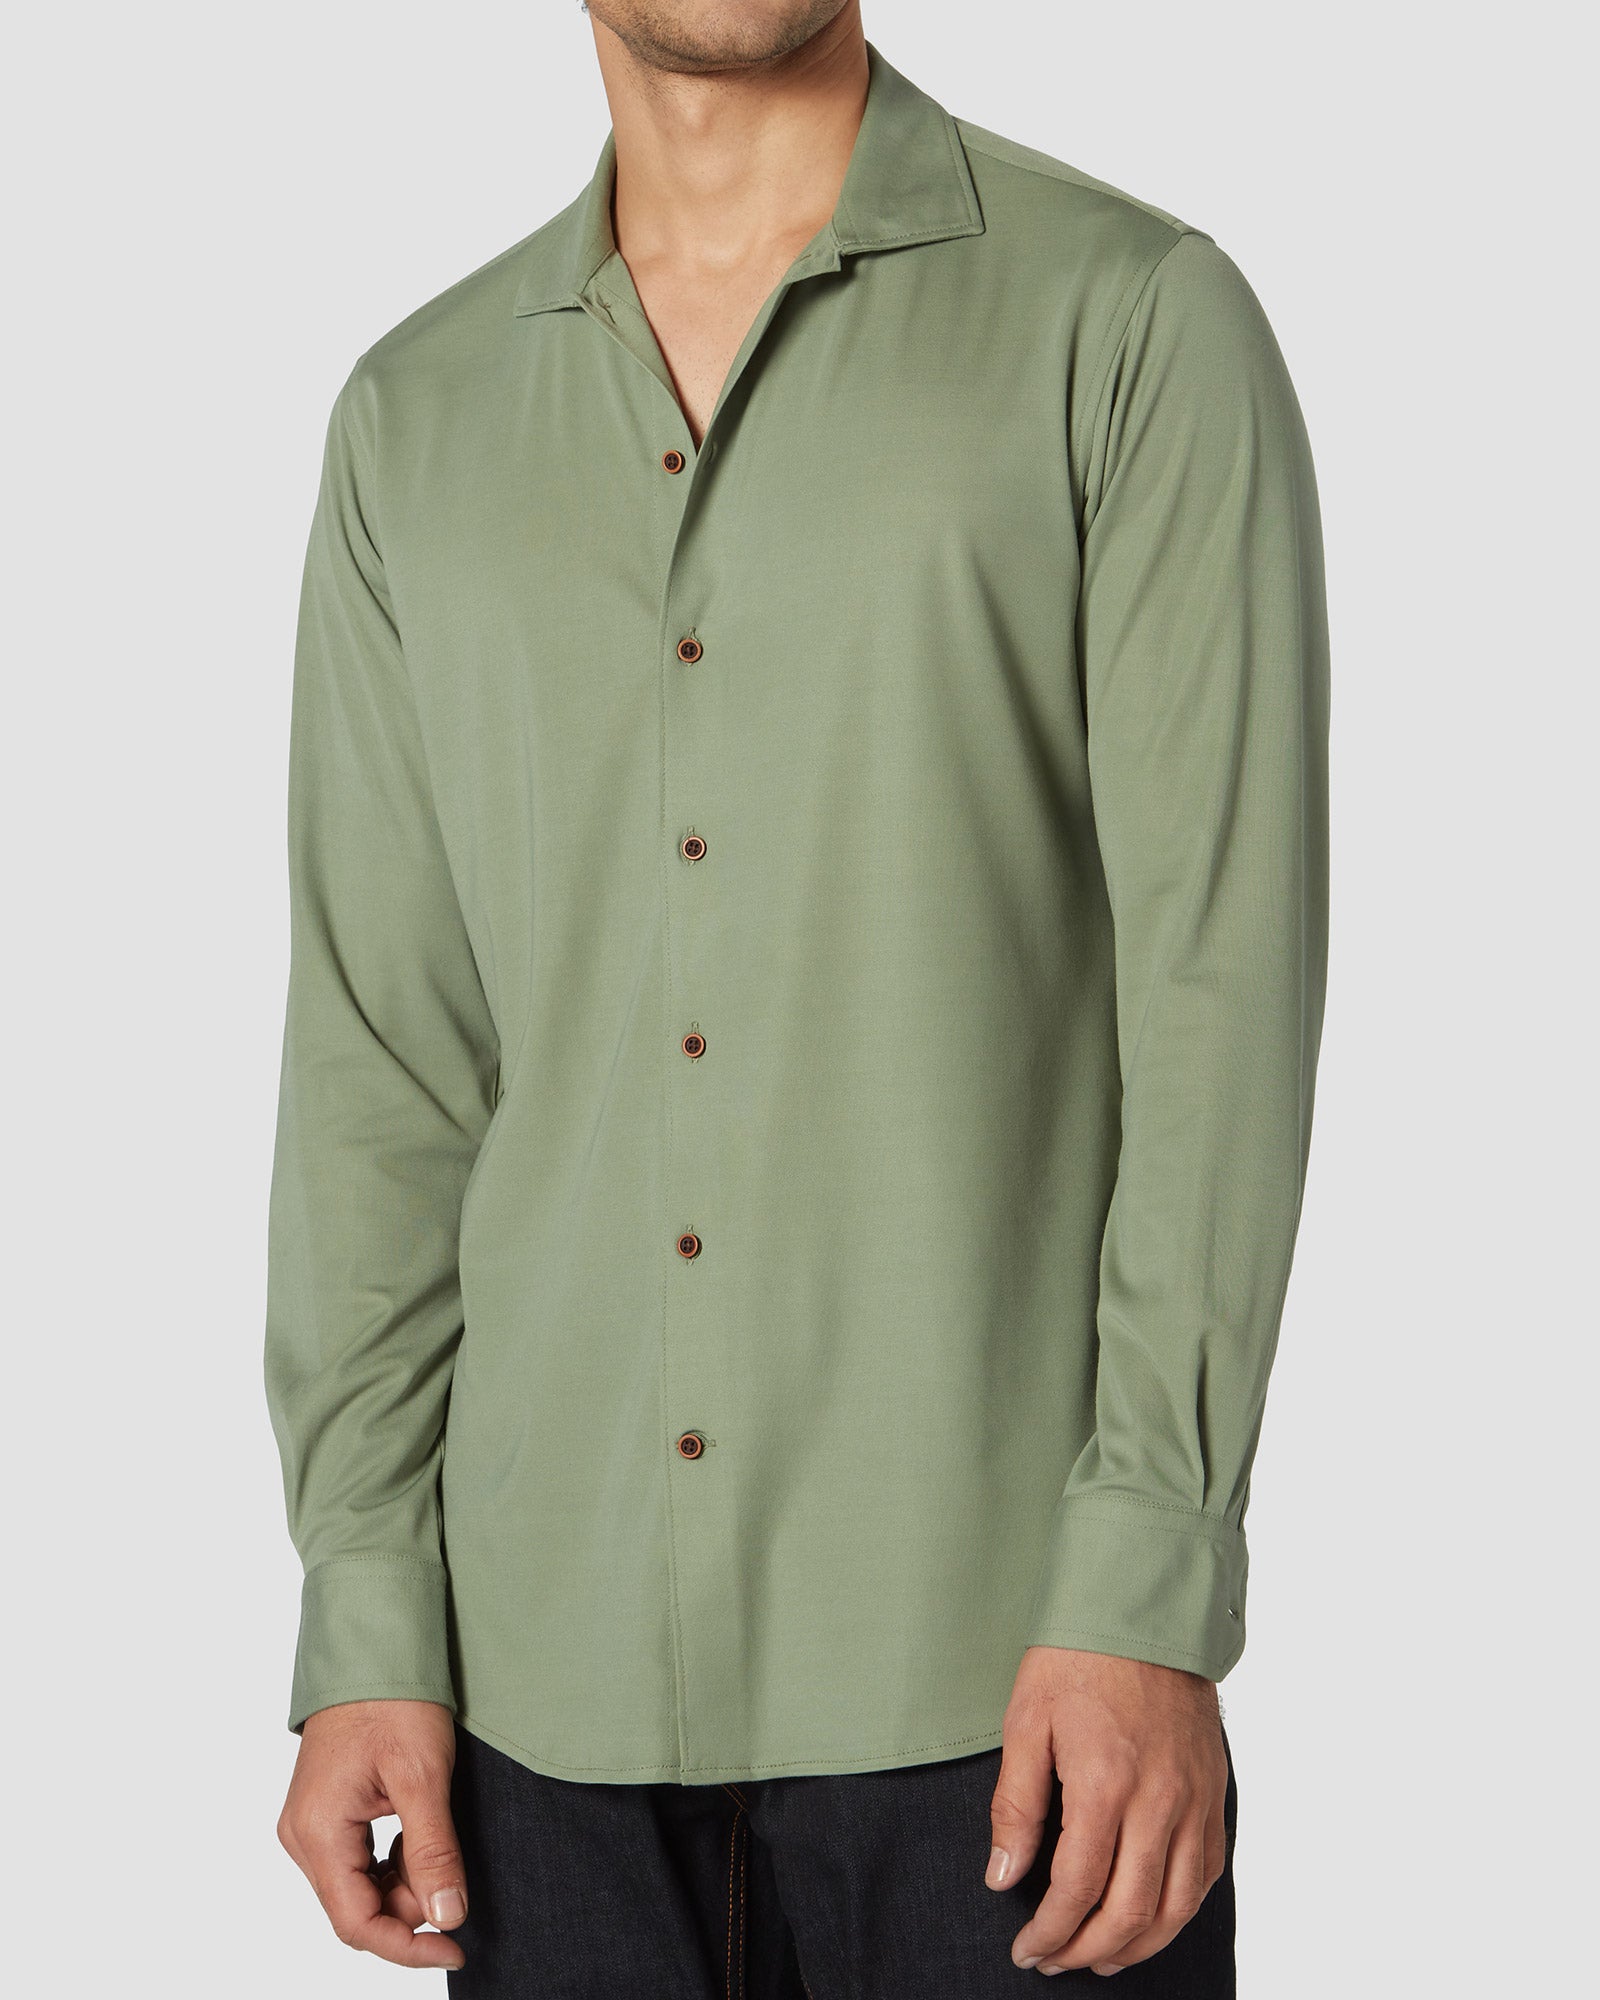 Bombay Shirt Company - Jade Knit Shirt